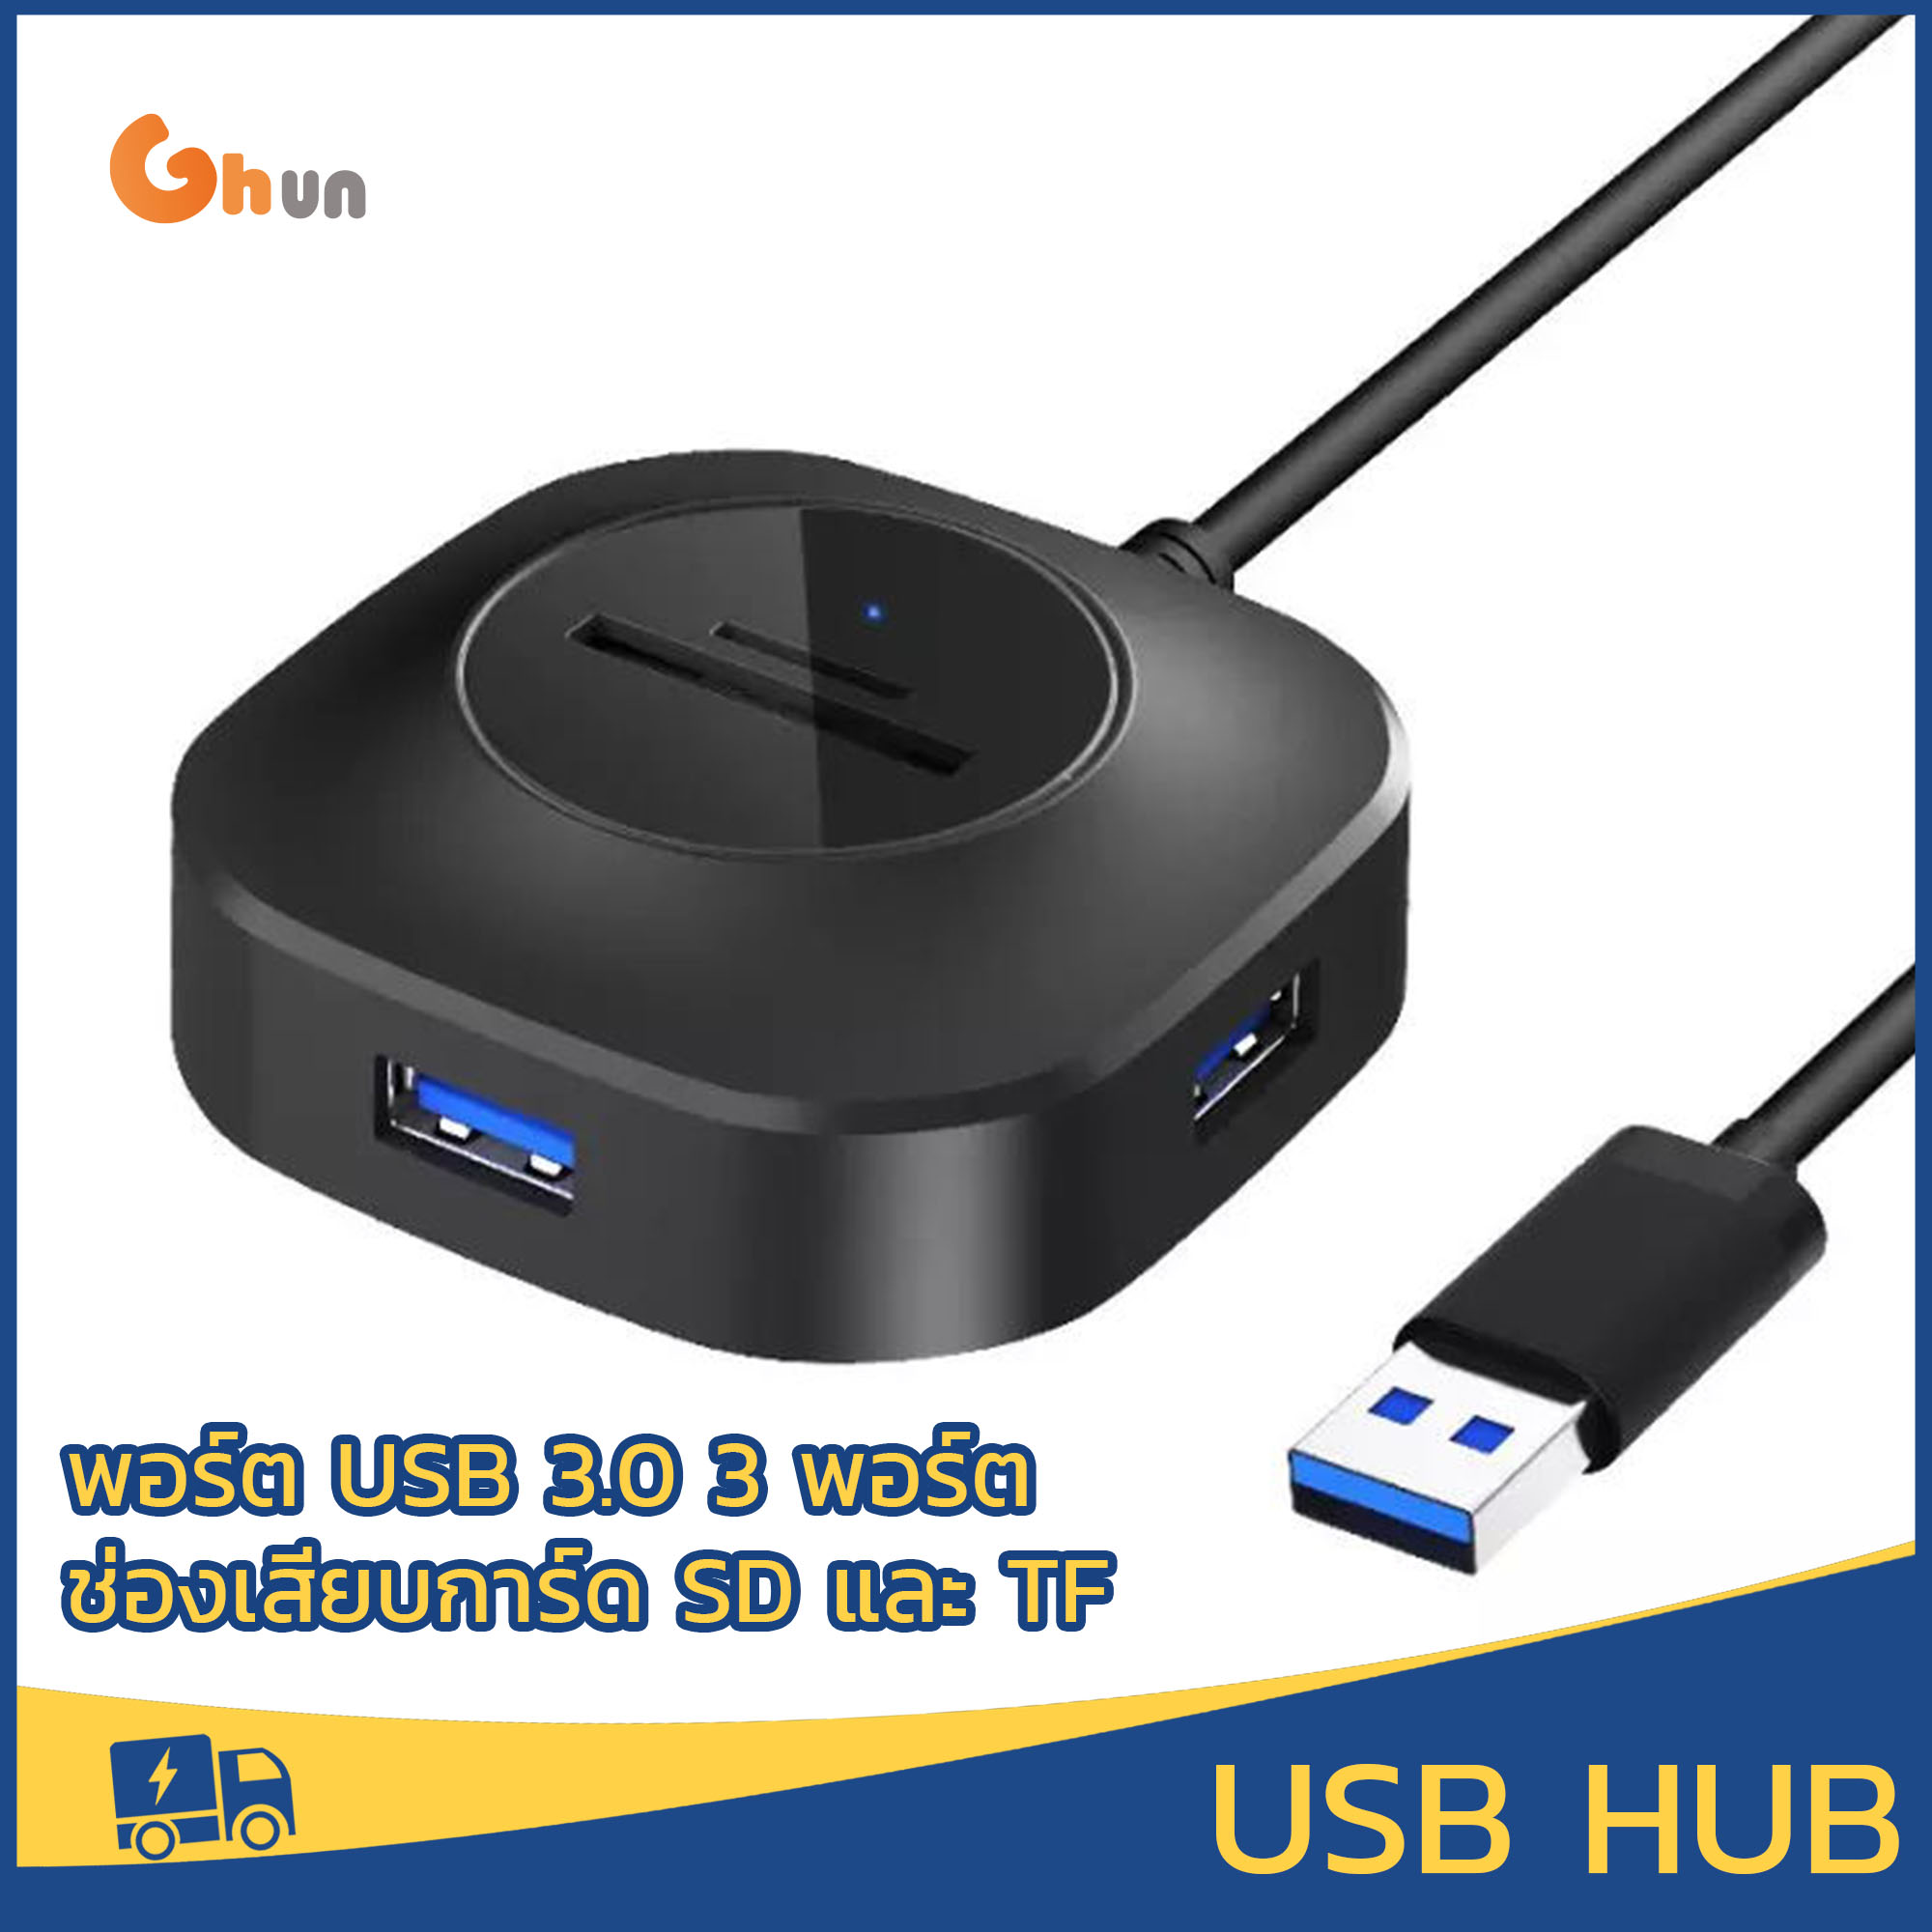 ฮับ USB 3.0, ฮับ USB พร้อมเครื่องอ่านการ์ด SD (พอร์ต USB 3.0 3 พอร์ต + ช่องเสียบการ์ด SD & TF), อะแดปเตอร์ฮับ USB พร้อมพอร์ตจ่ายไฟ Micro USB